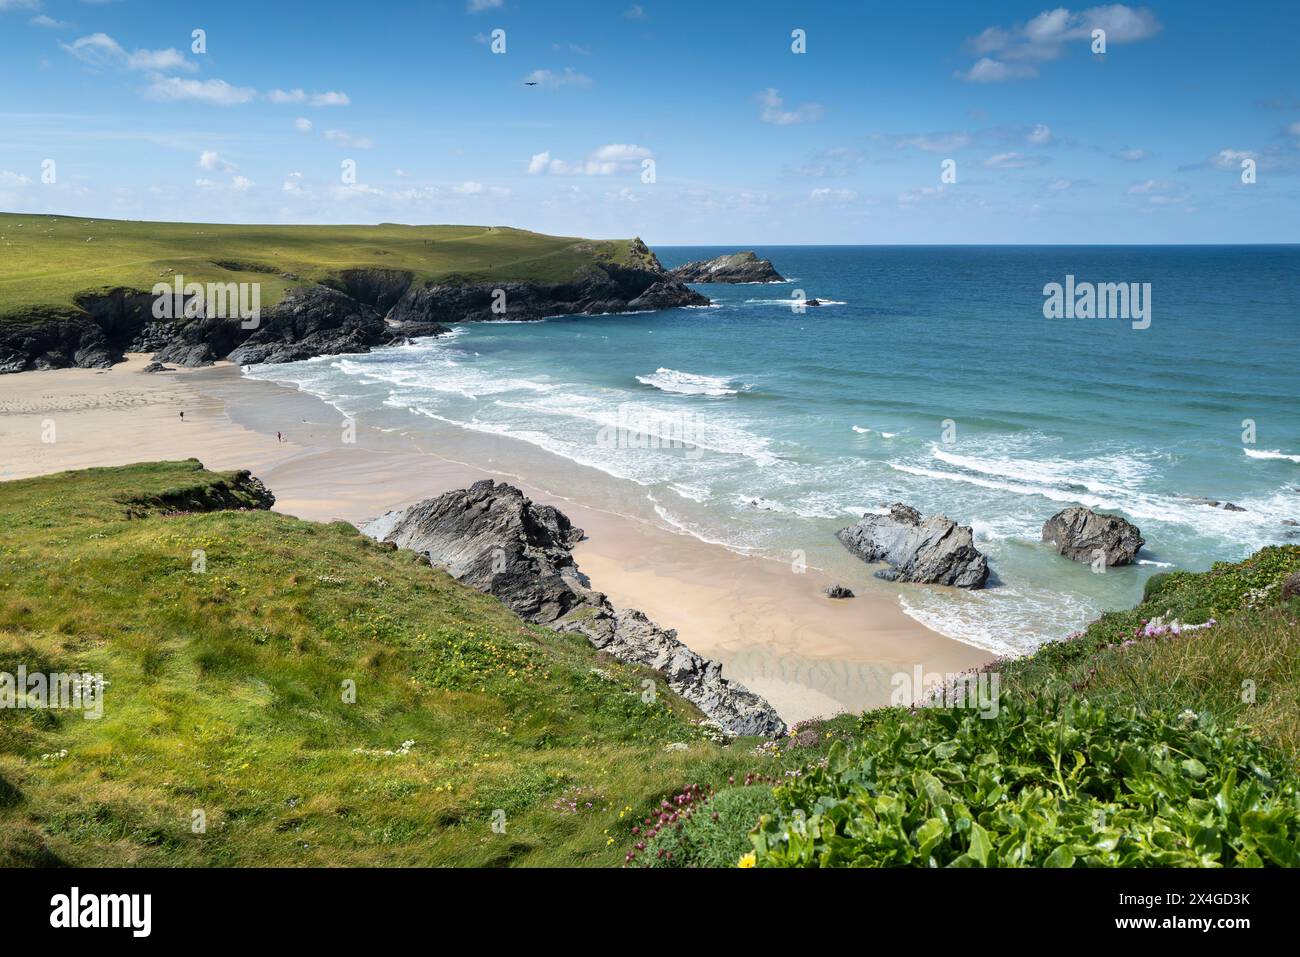 La plage isolée et préservée de Polly Joke Porth Joke sur la côte de Newquay en Cornouailles au Royaume-Uni. Banque D'Images